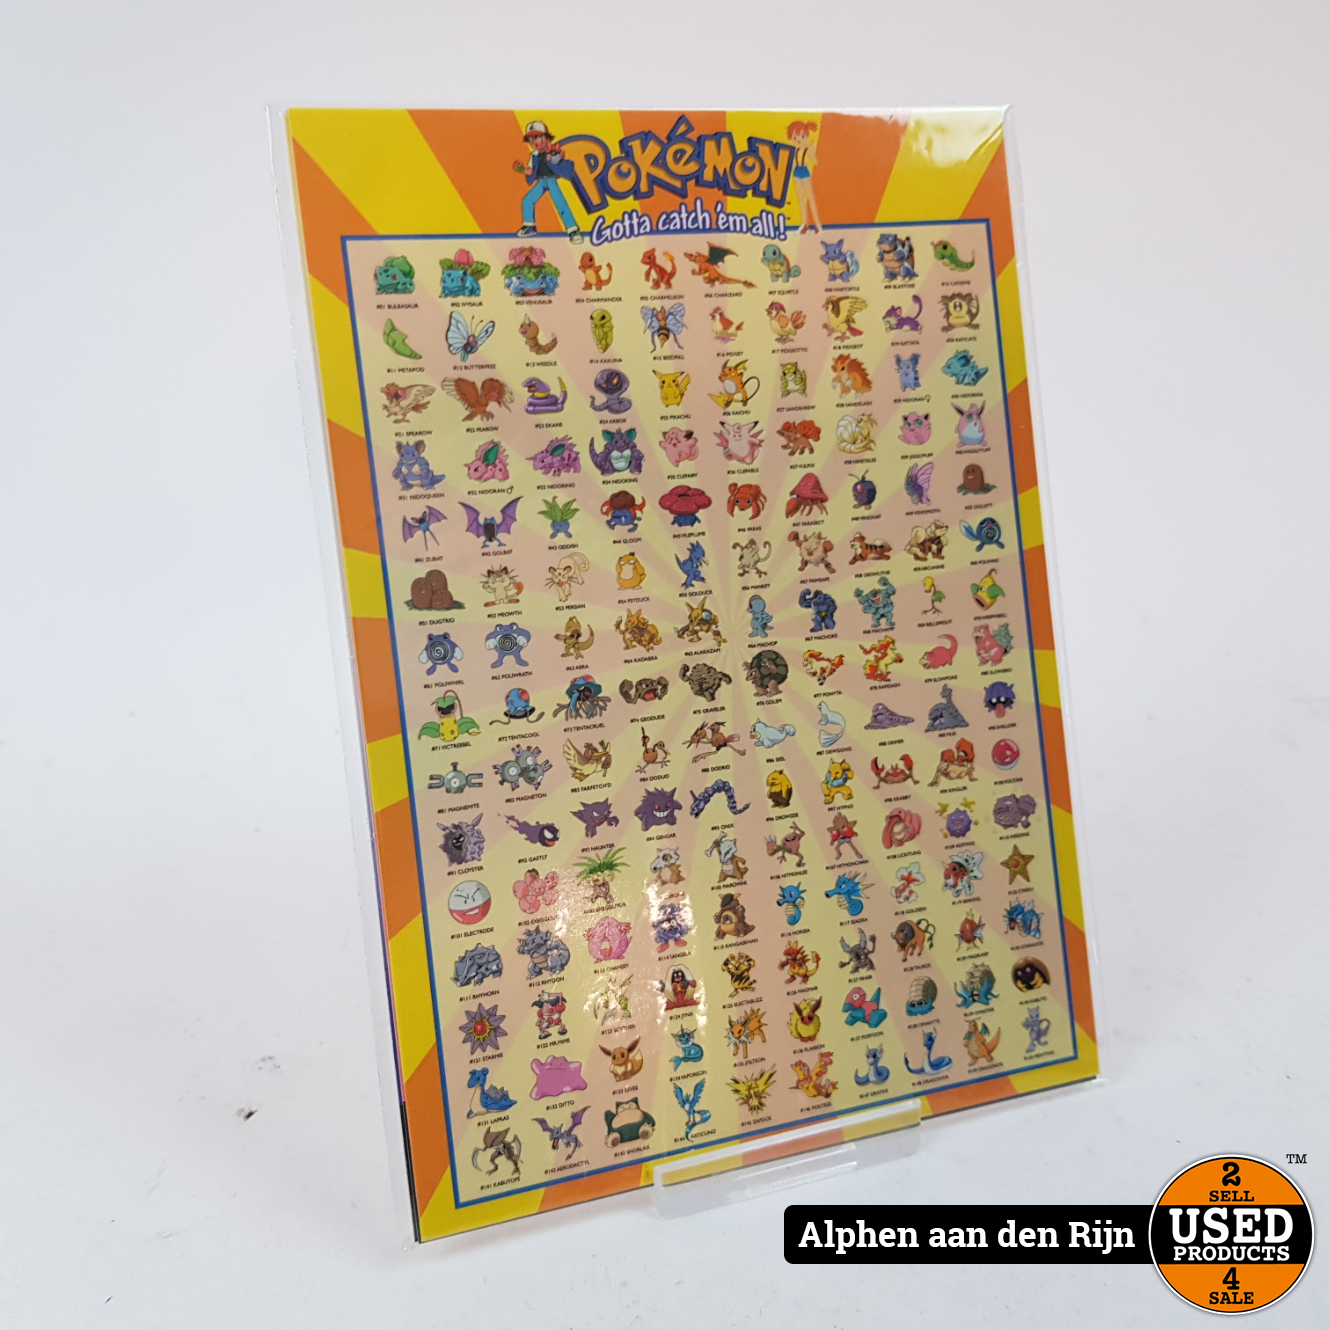 Montgomery redden dief Pokemon kaarten - wenskaarten Origineel Nintendo 1998 - 150 pokemon kaart -  Used Products Alphen aan den Rijn